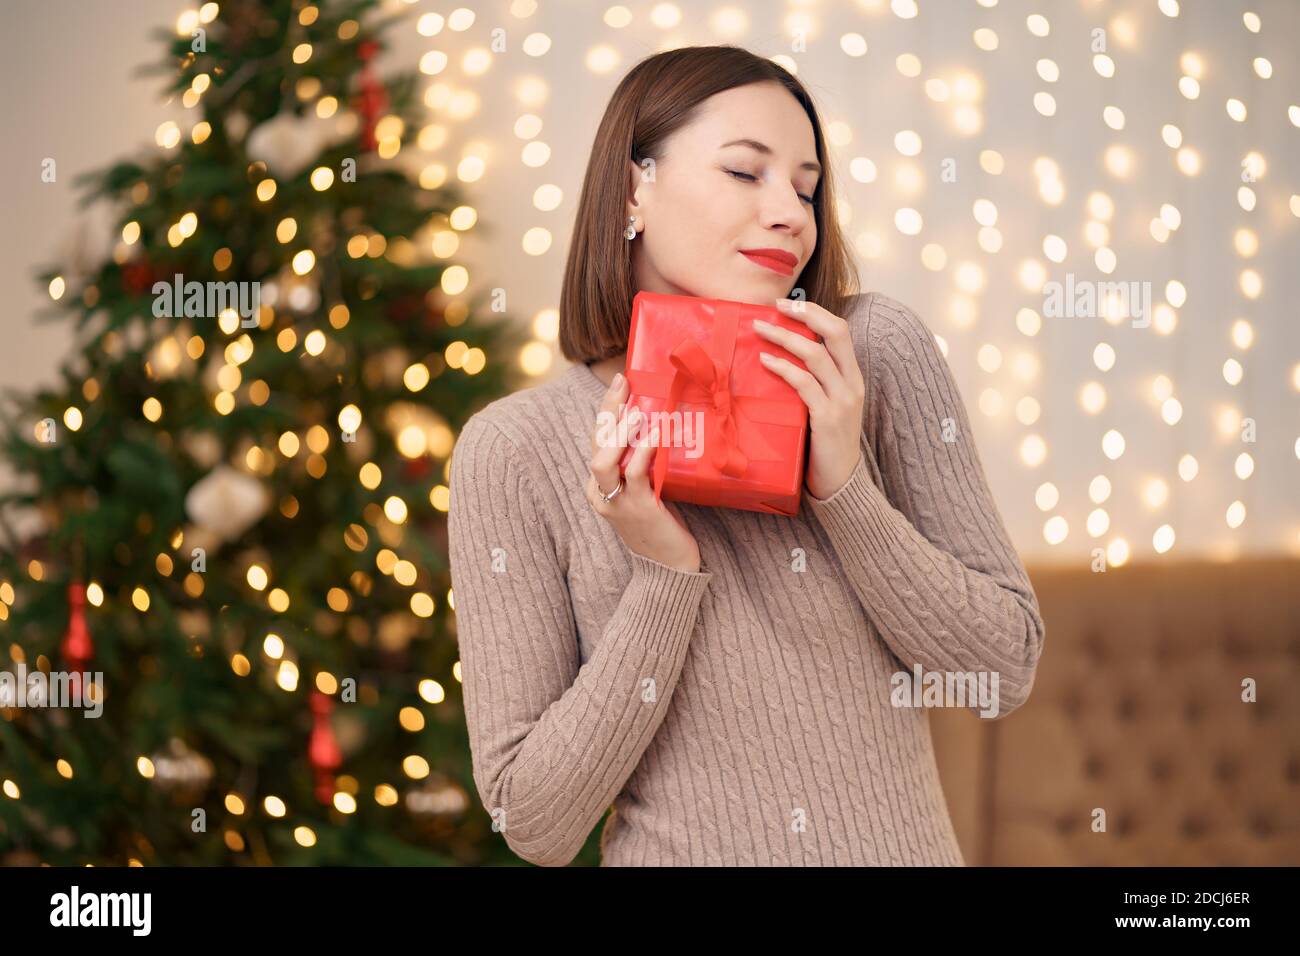 Portrait de jeune femme heureuse lèvres rouges posant avec une boîte cadeau emballée. Gros plan la femme satisfaite a reçu la boîte actuelle. Rétro-éclairage de Noël festif Banque D'Images